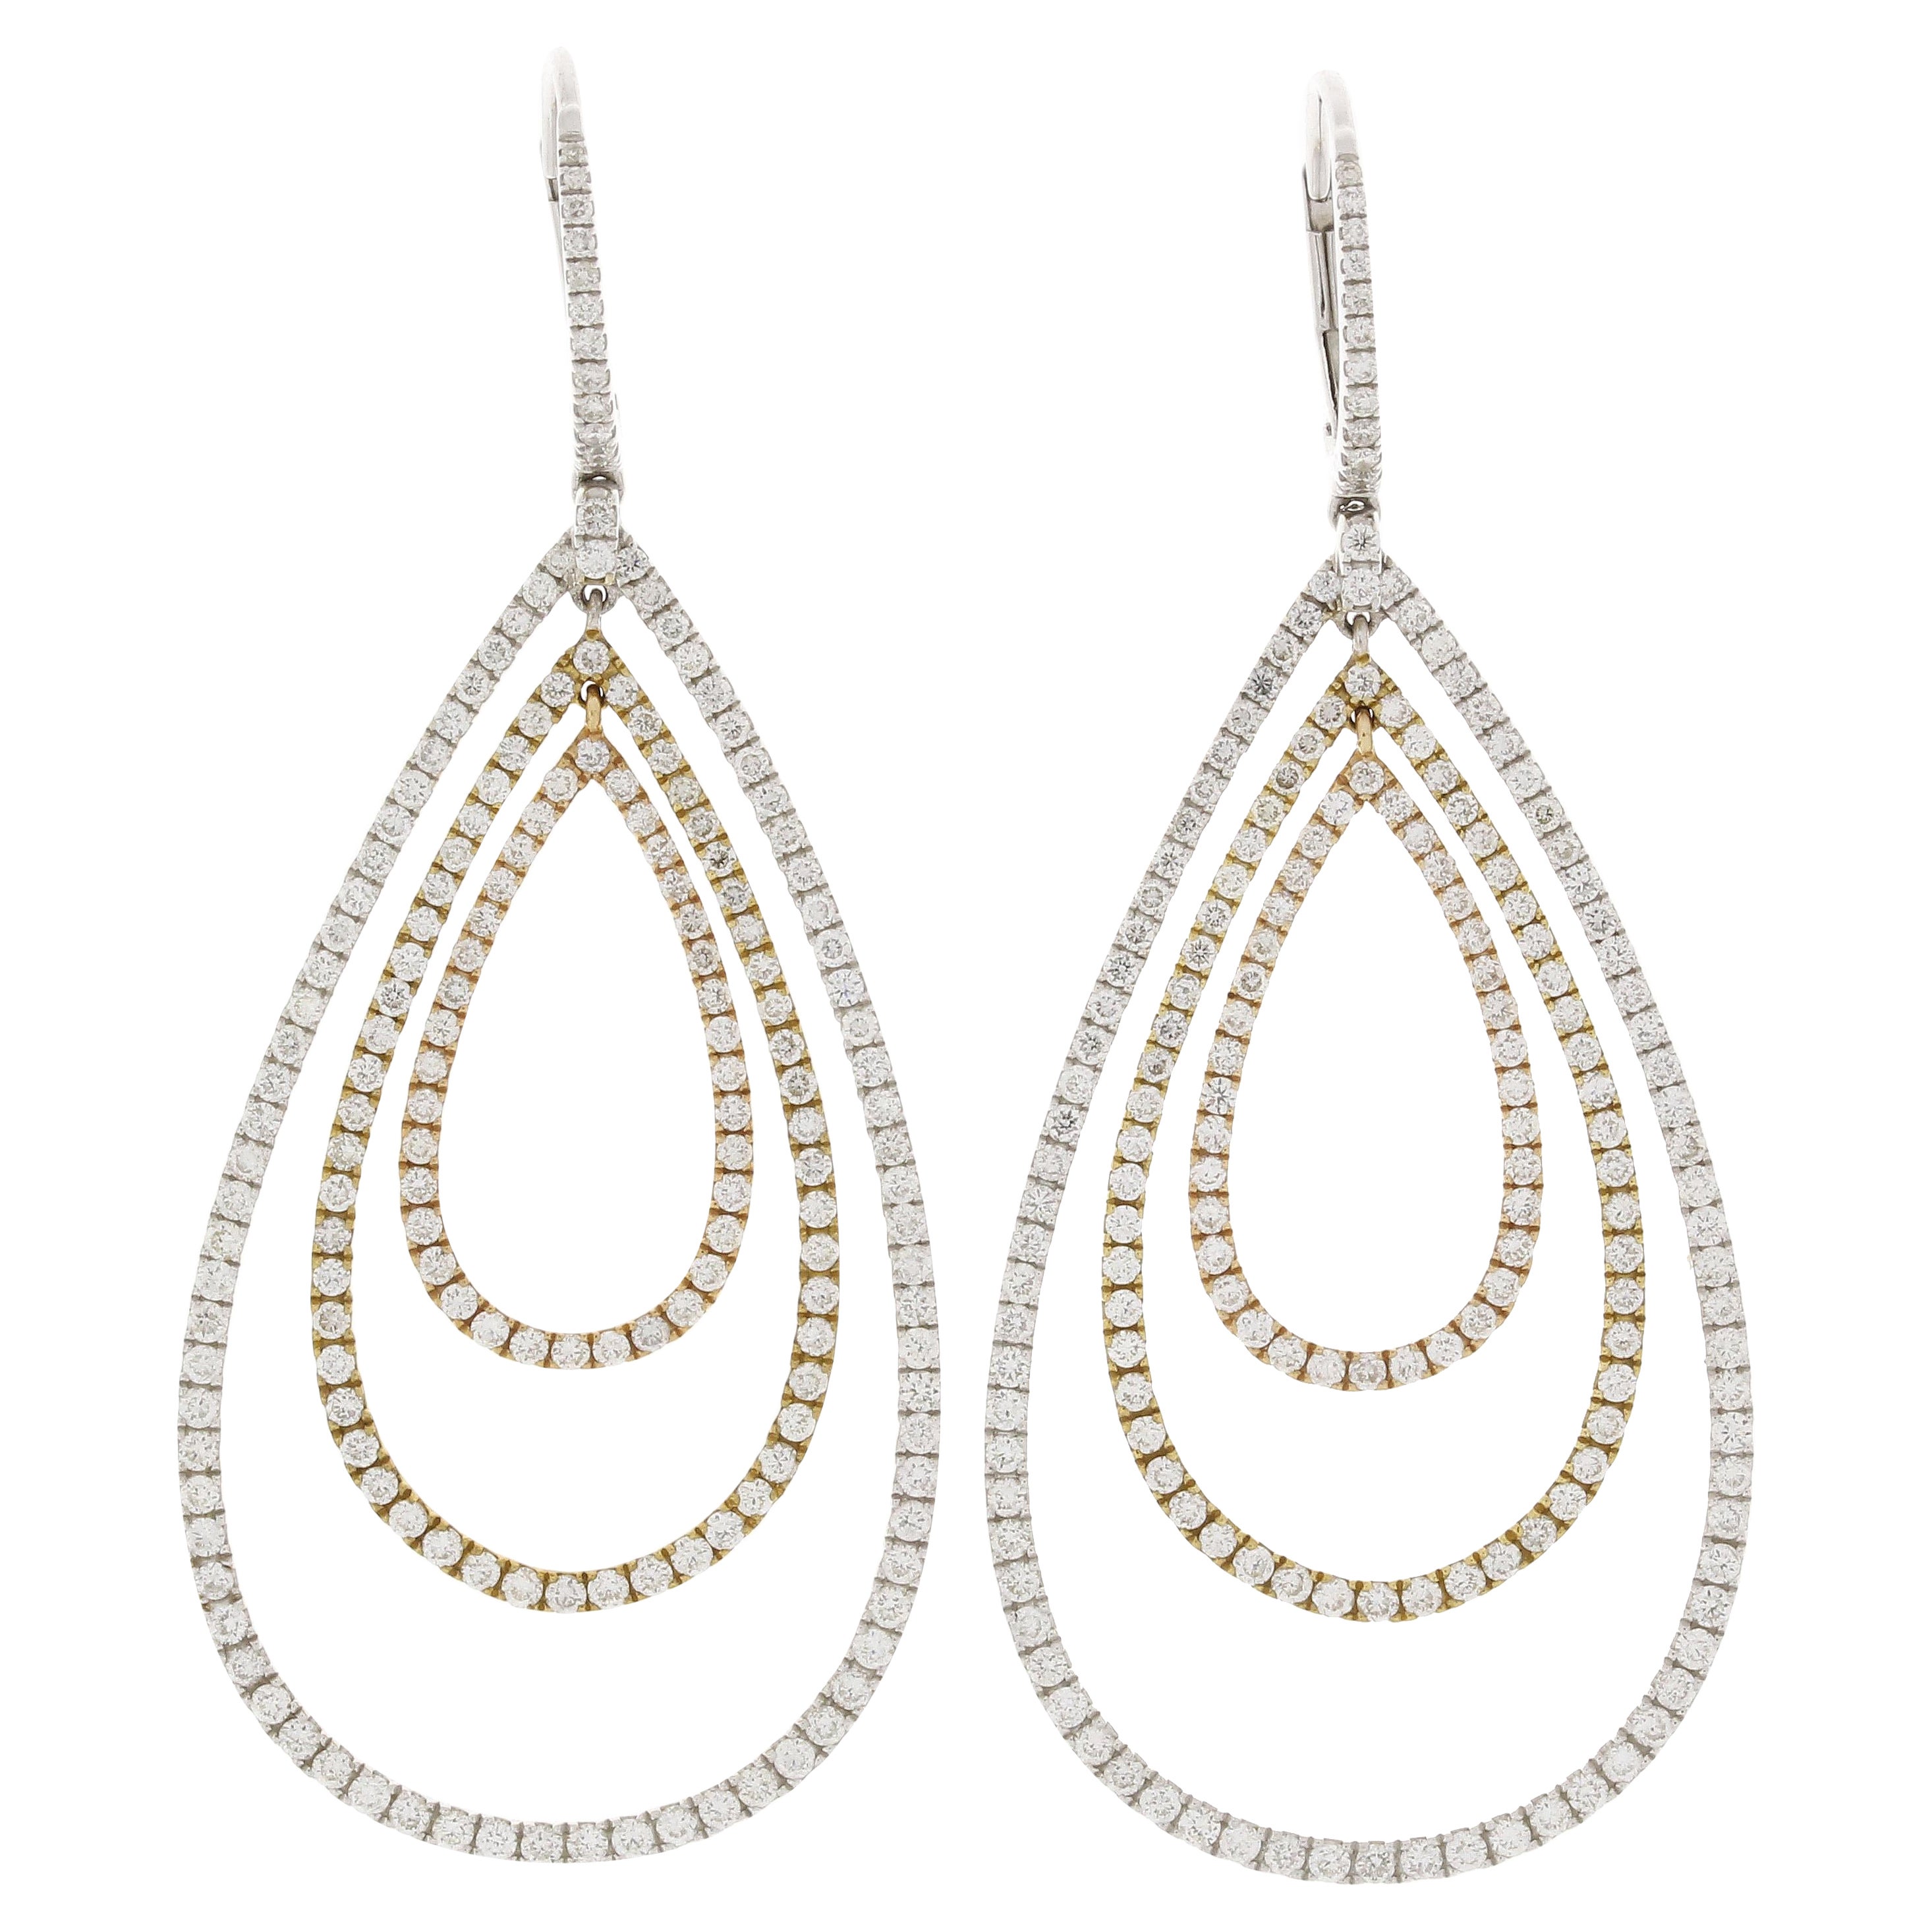 3.59 Carat 18k White Gold Jacob & Co. Teardrop Diamond Pave Chandelier Earrings